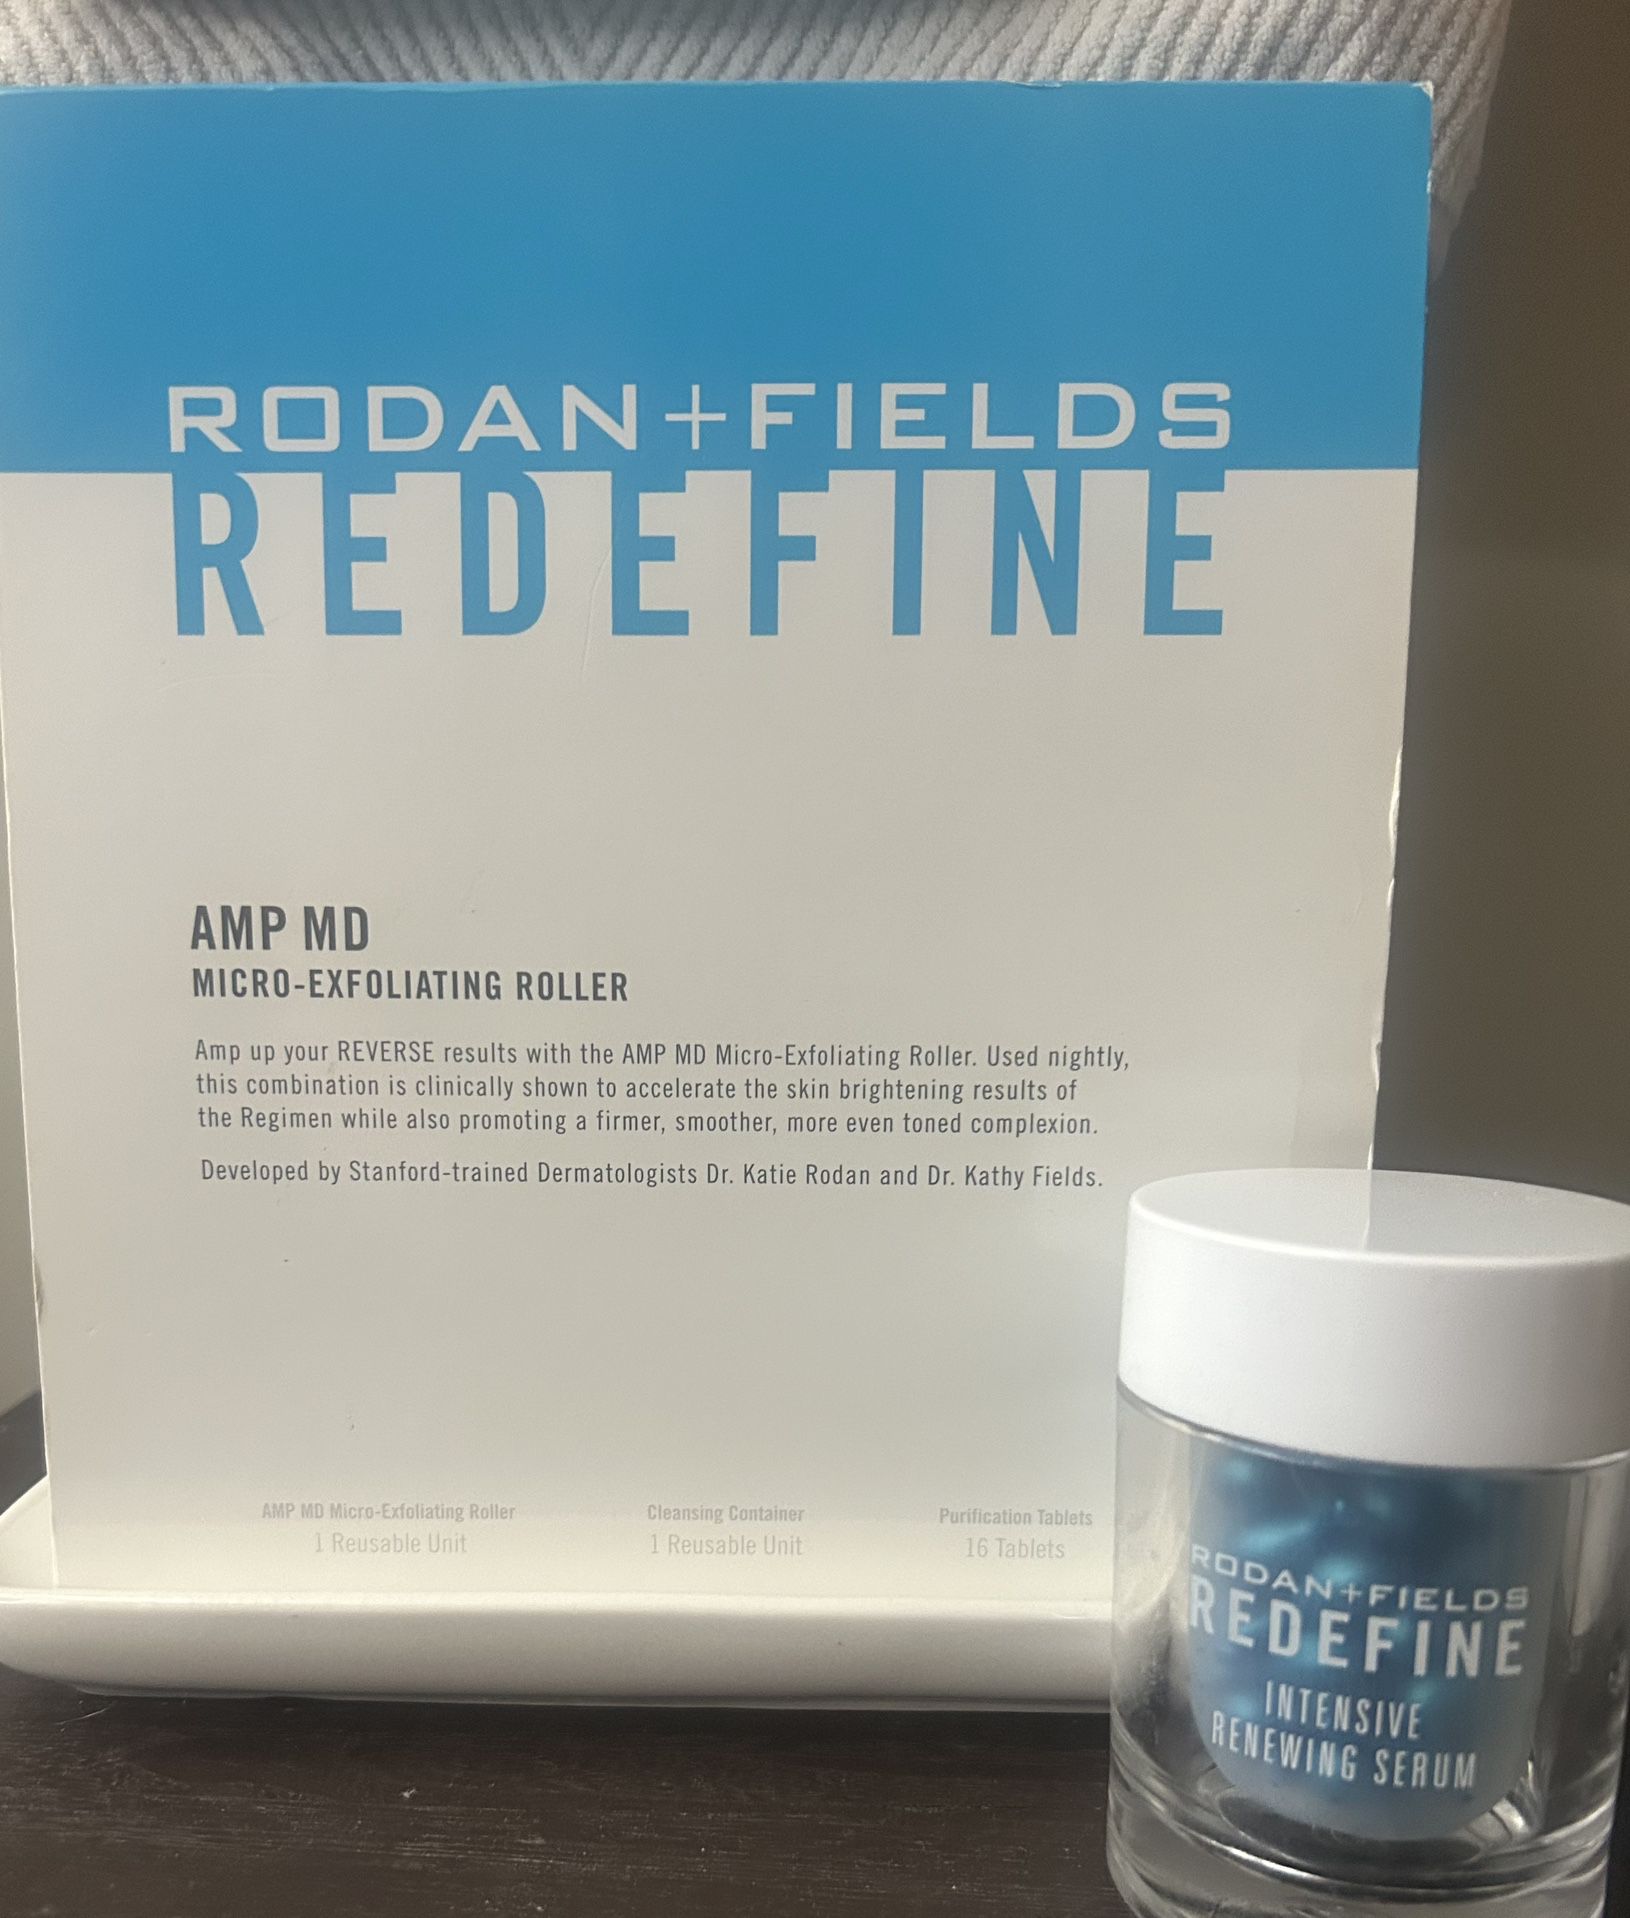 Rodan & Fields Redefine